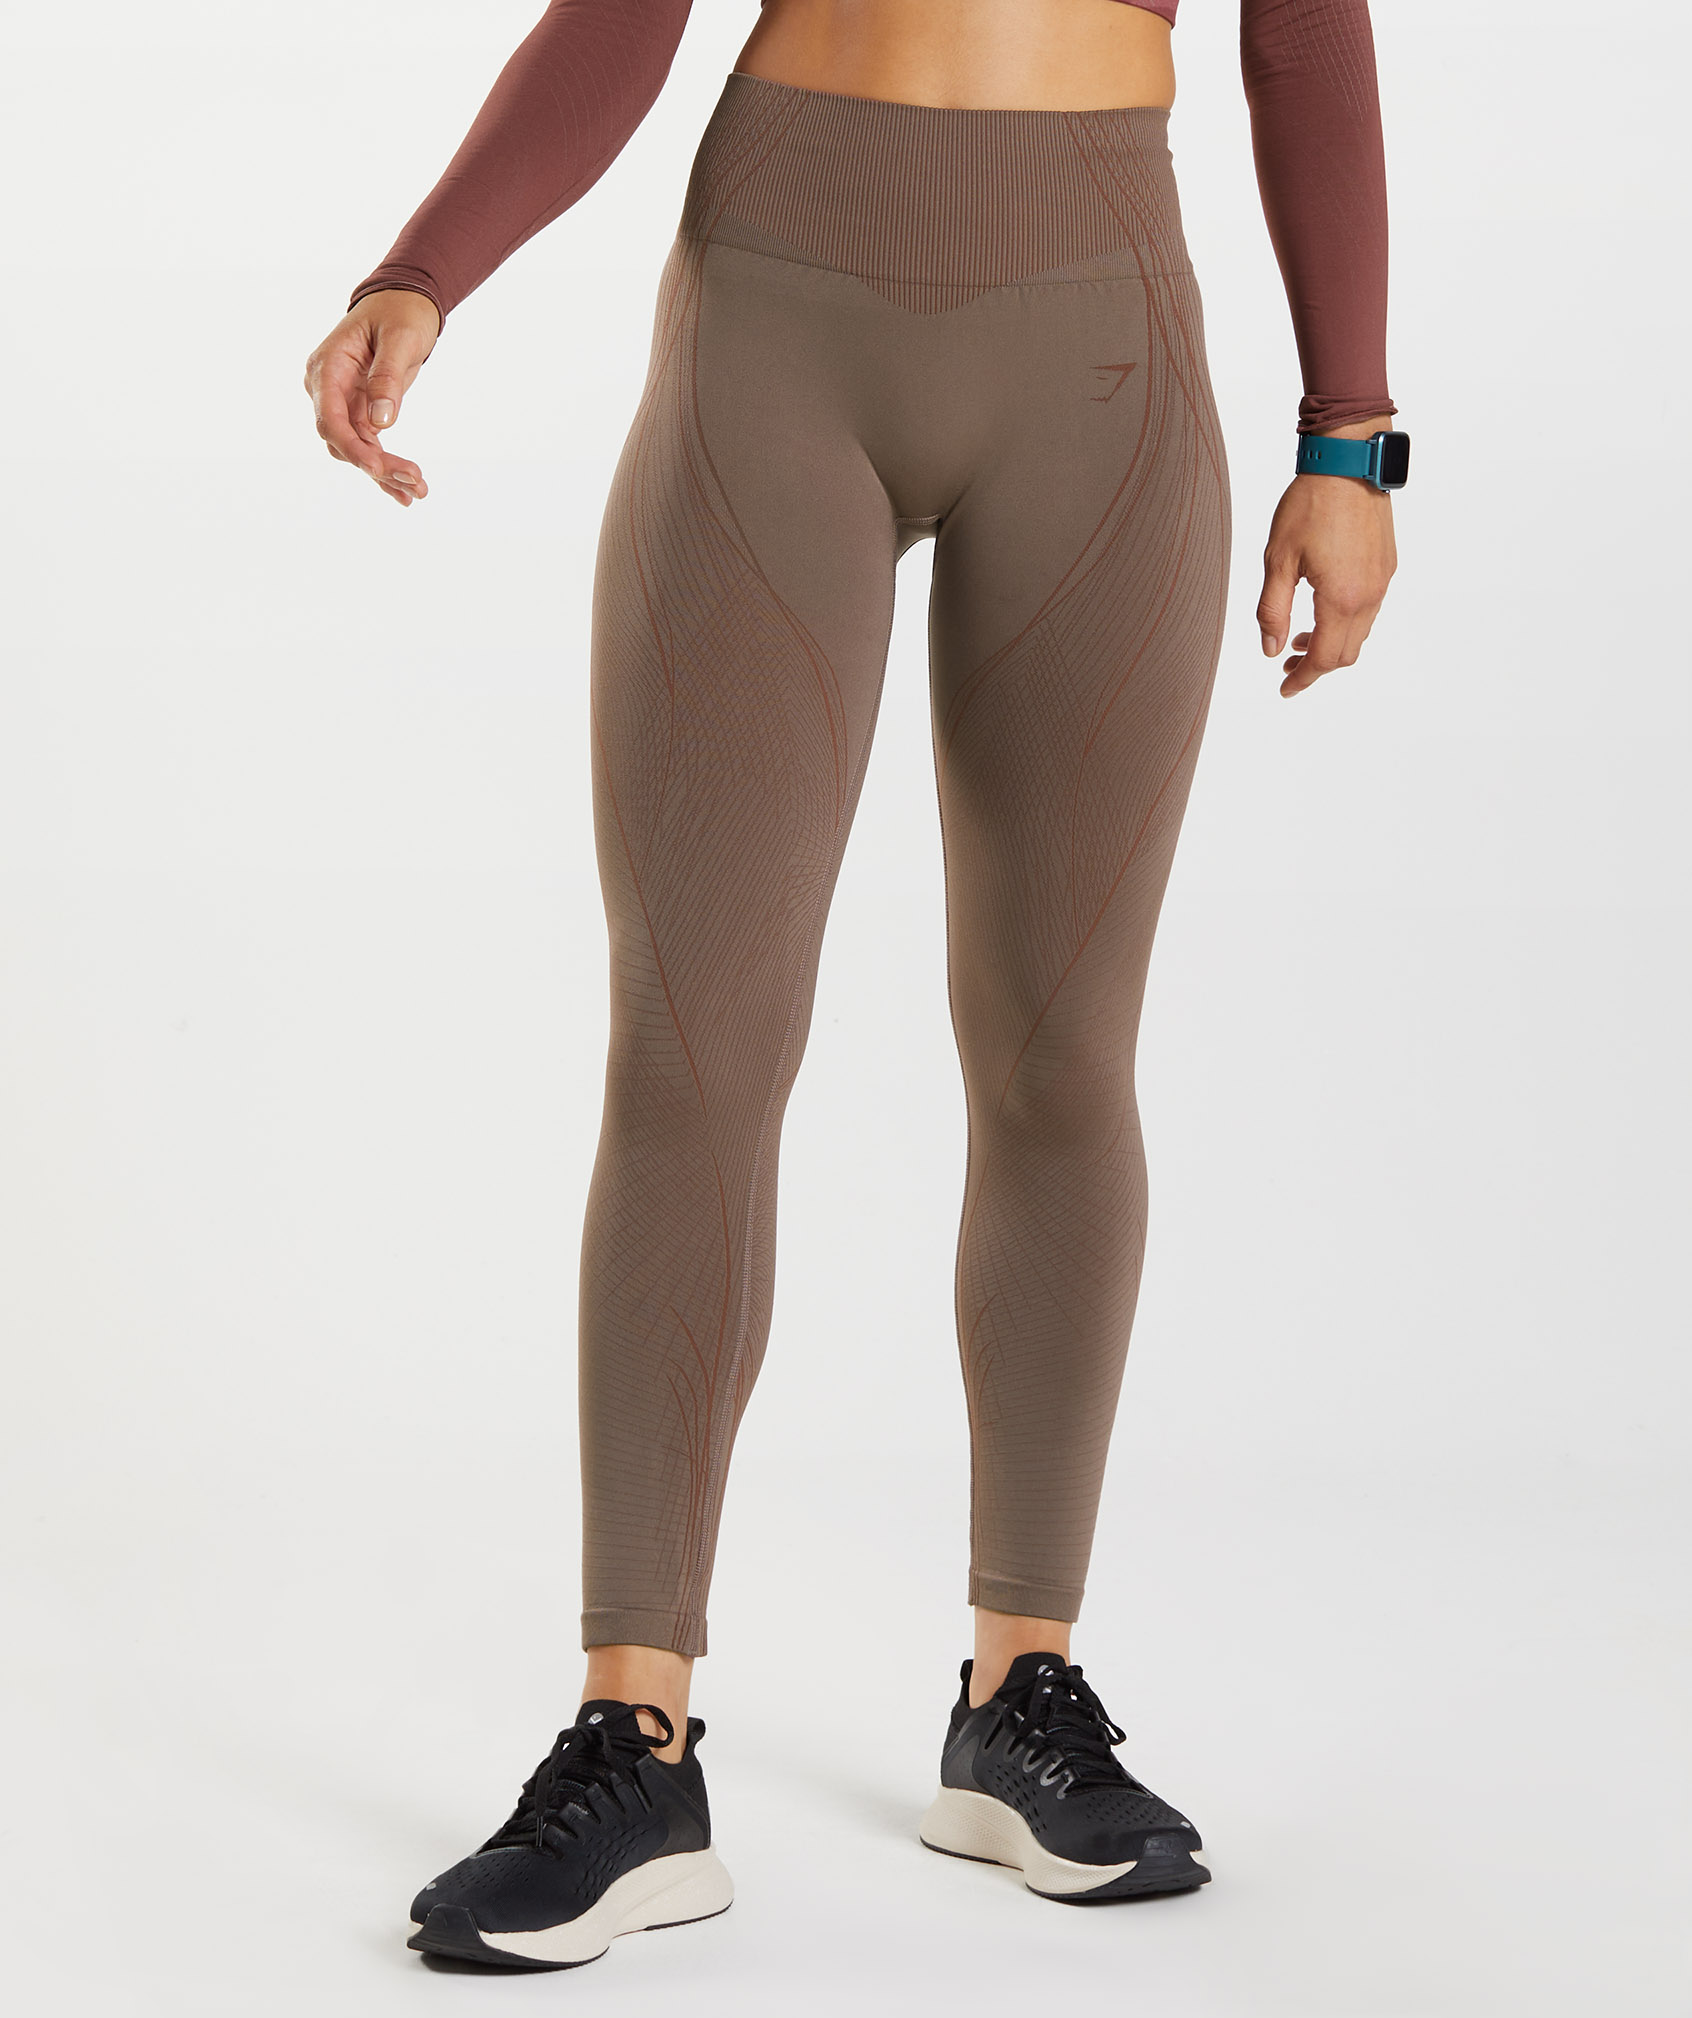 Gymshark Breathable Athletic Leggings for Women